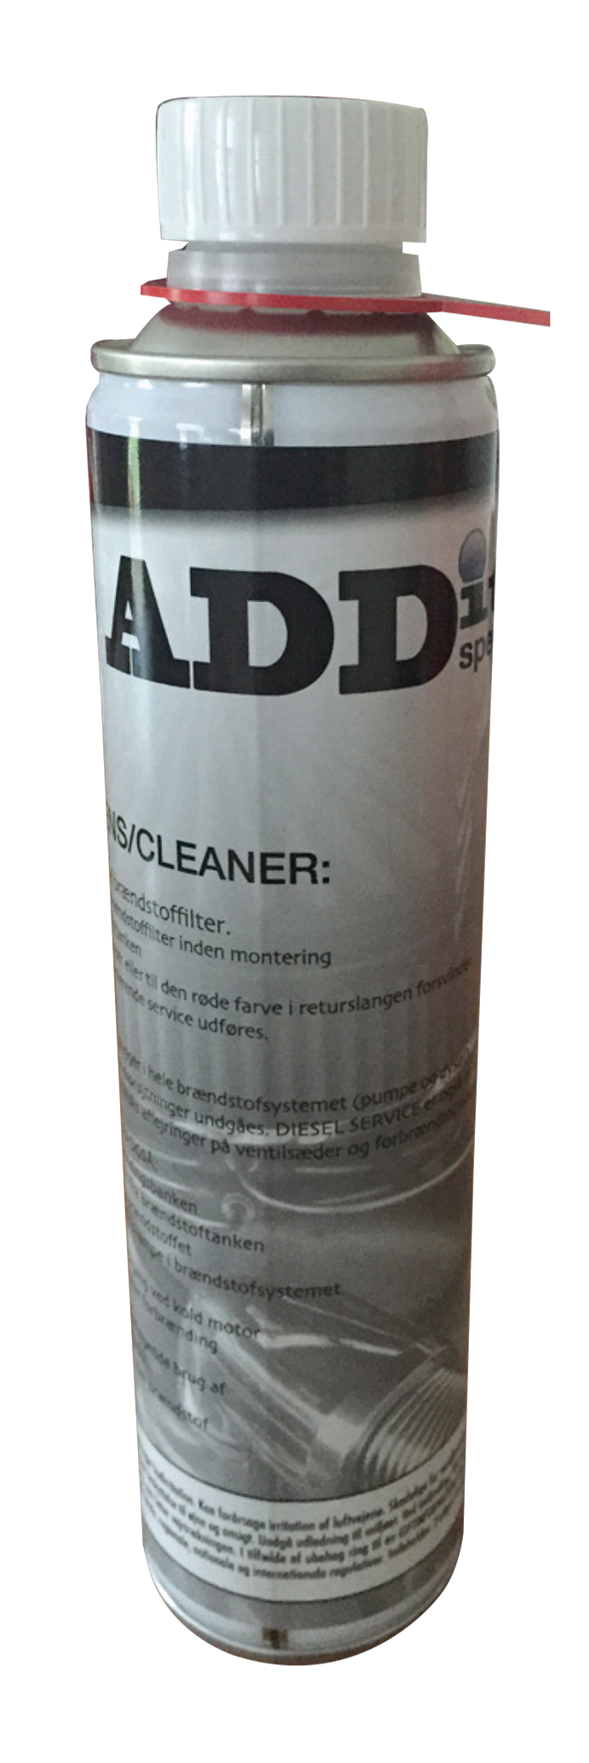 Dieselrens/cleaner AD 3330